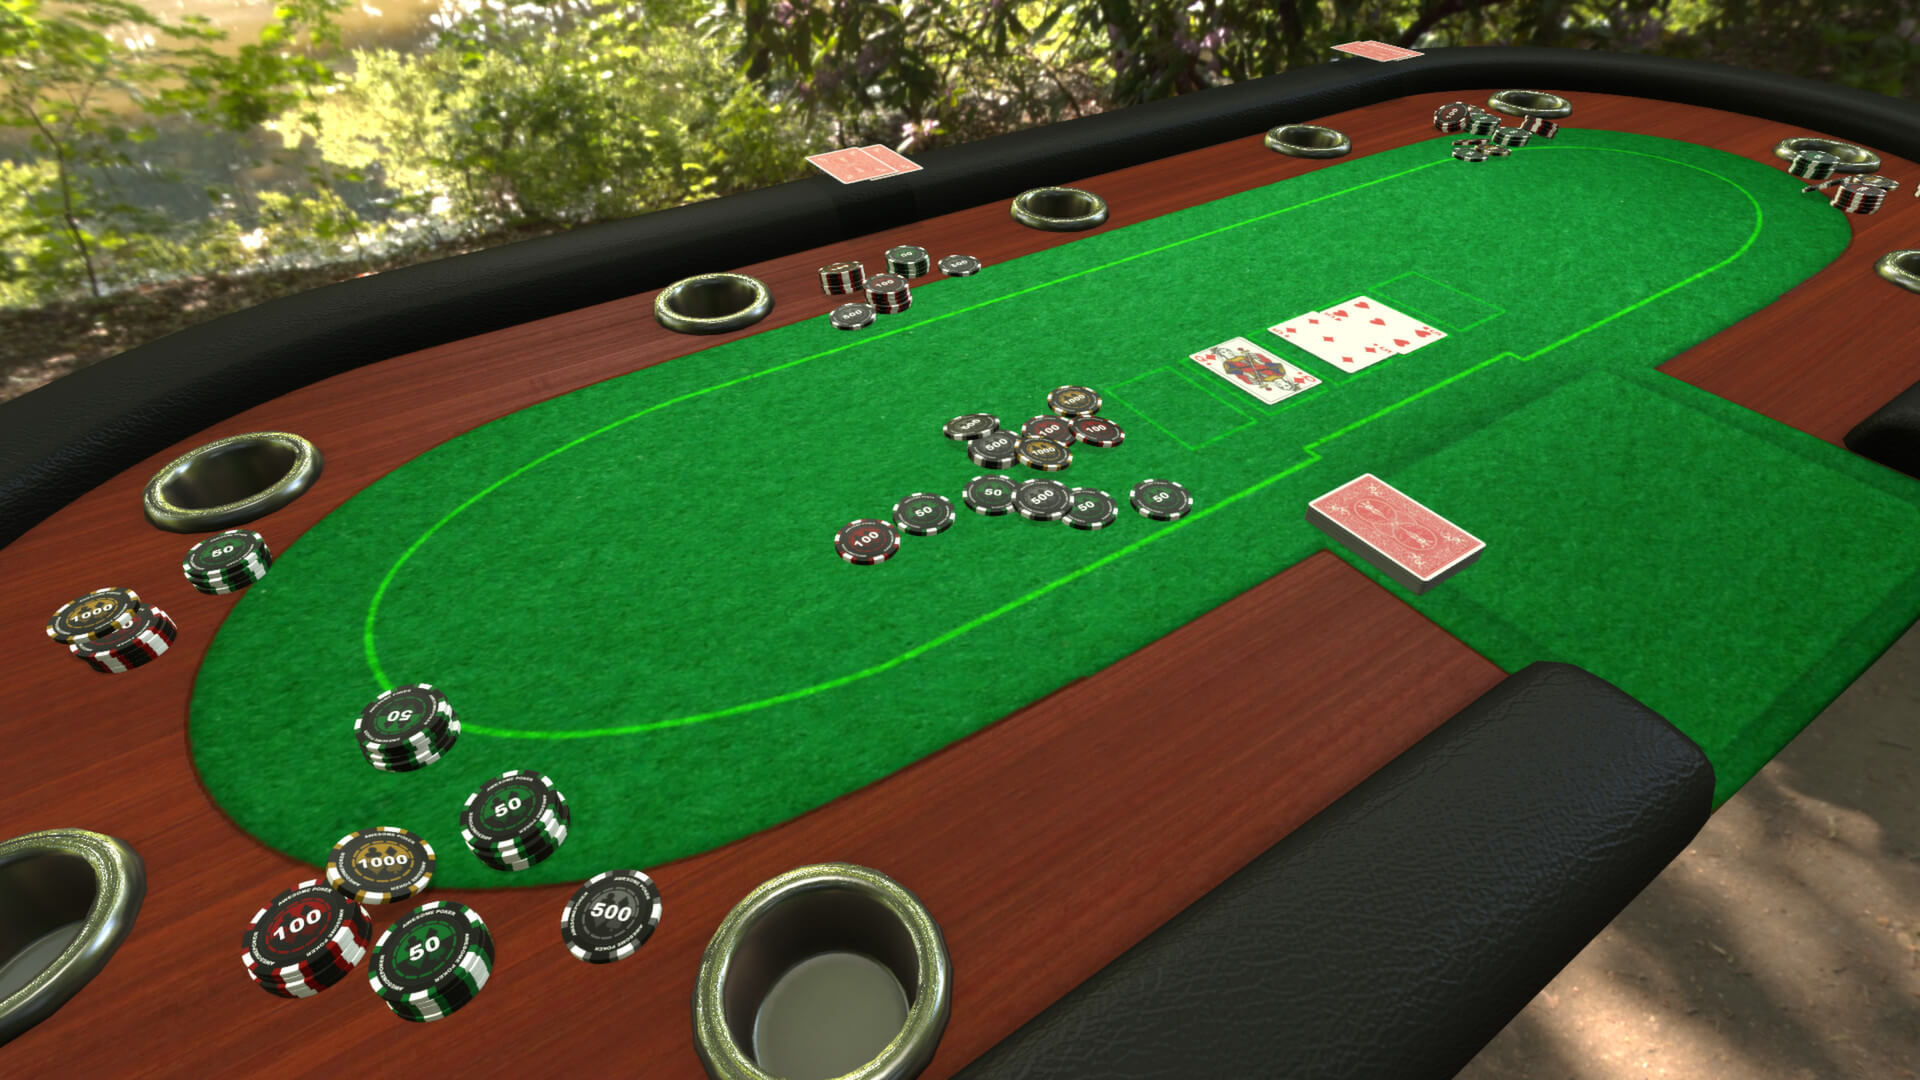 A casino board in Tabletop Simulator